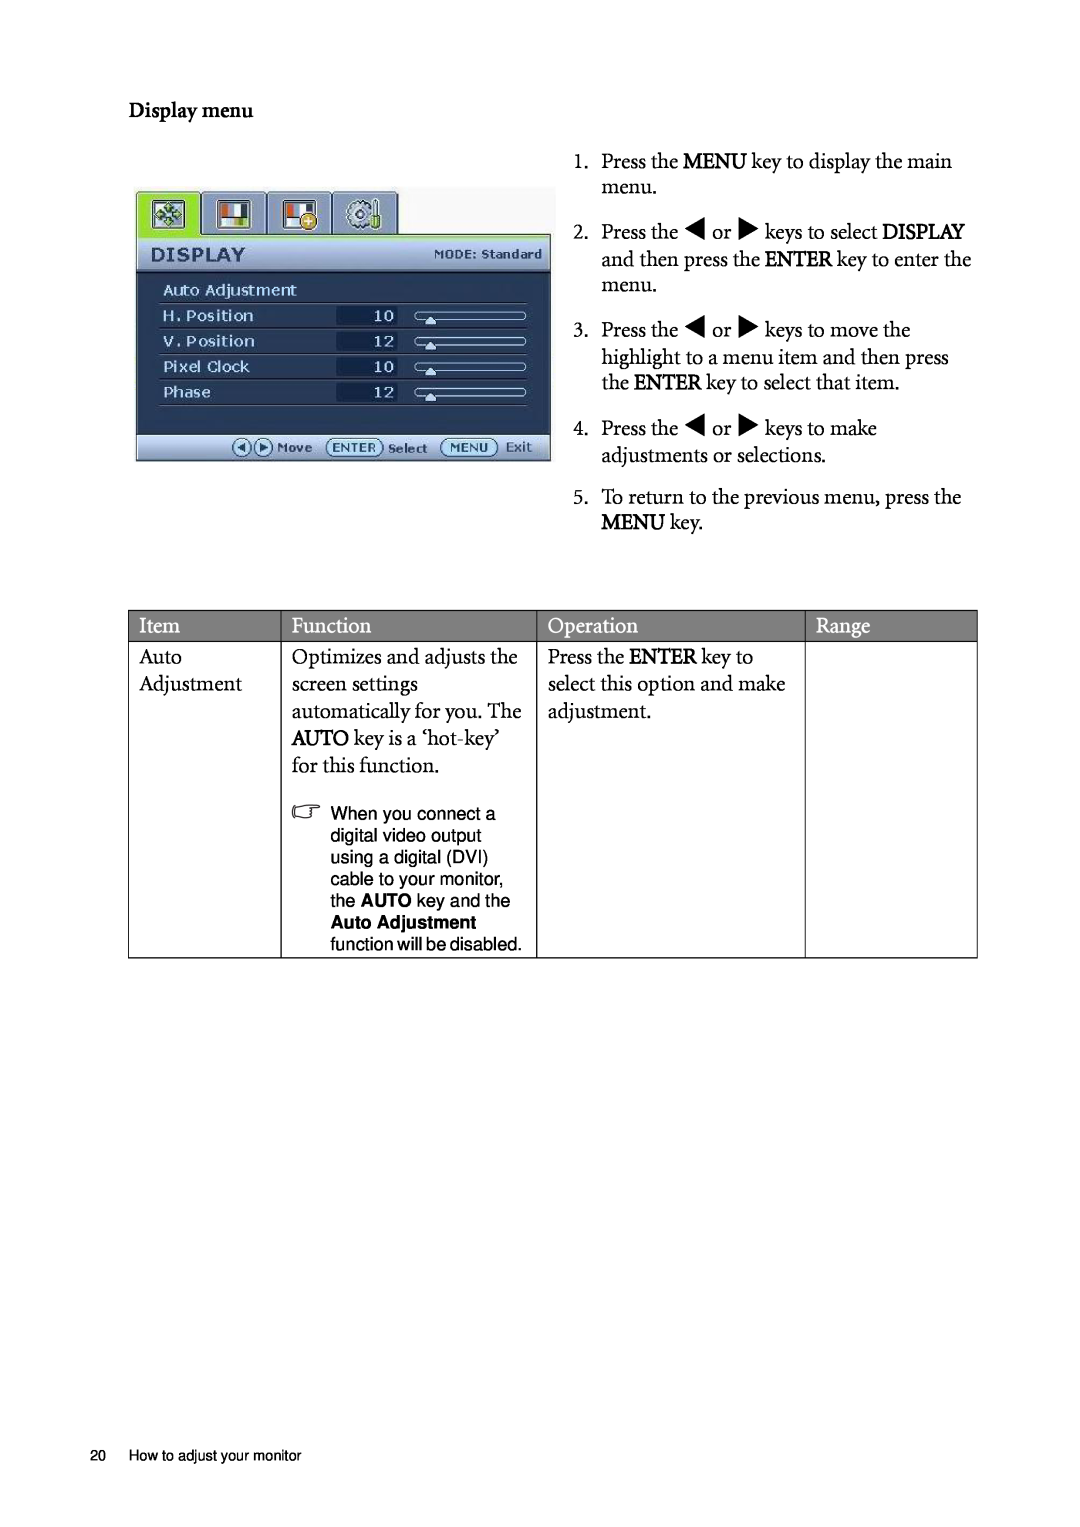 BenQ G2220HDA, G2020HDA user manual Function, Operation, Range, Display menu 